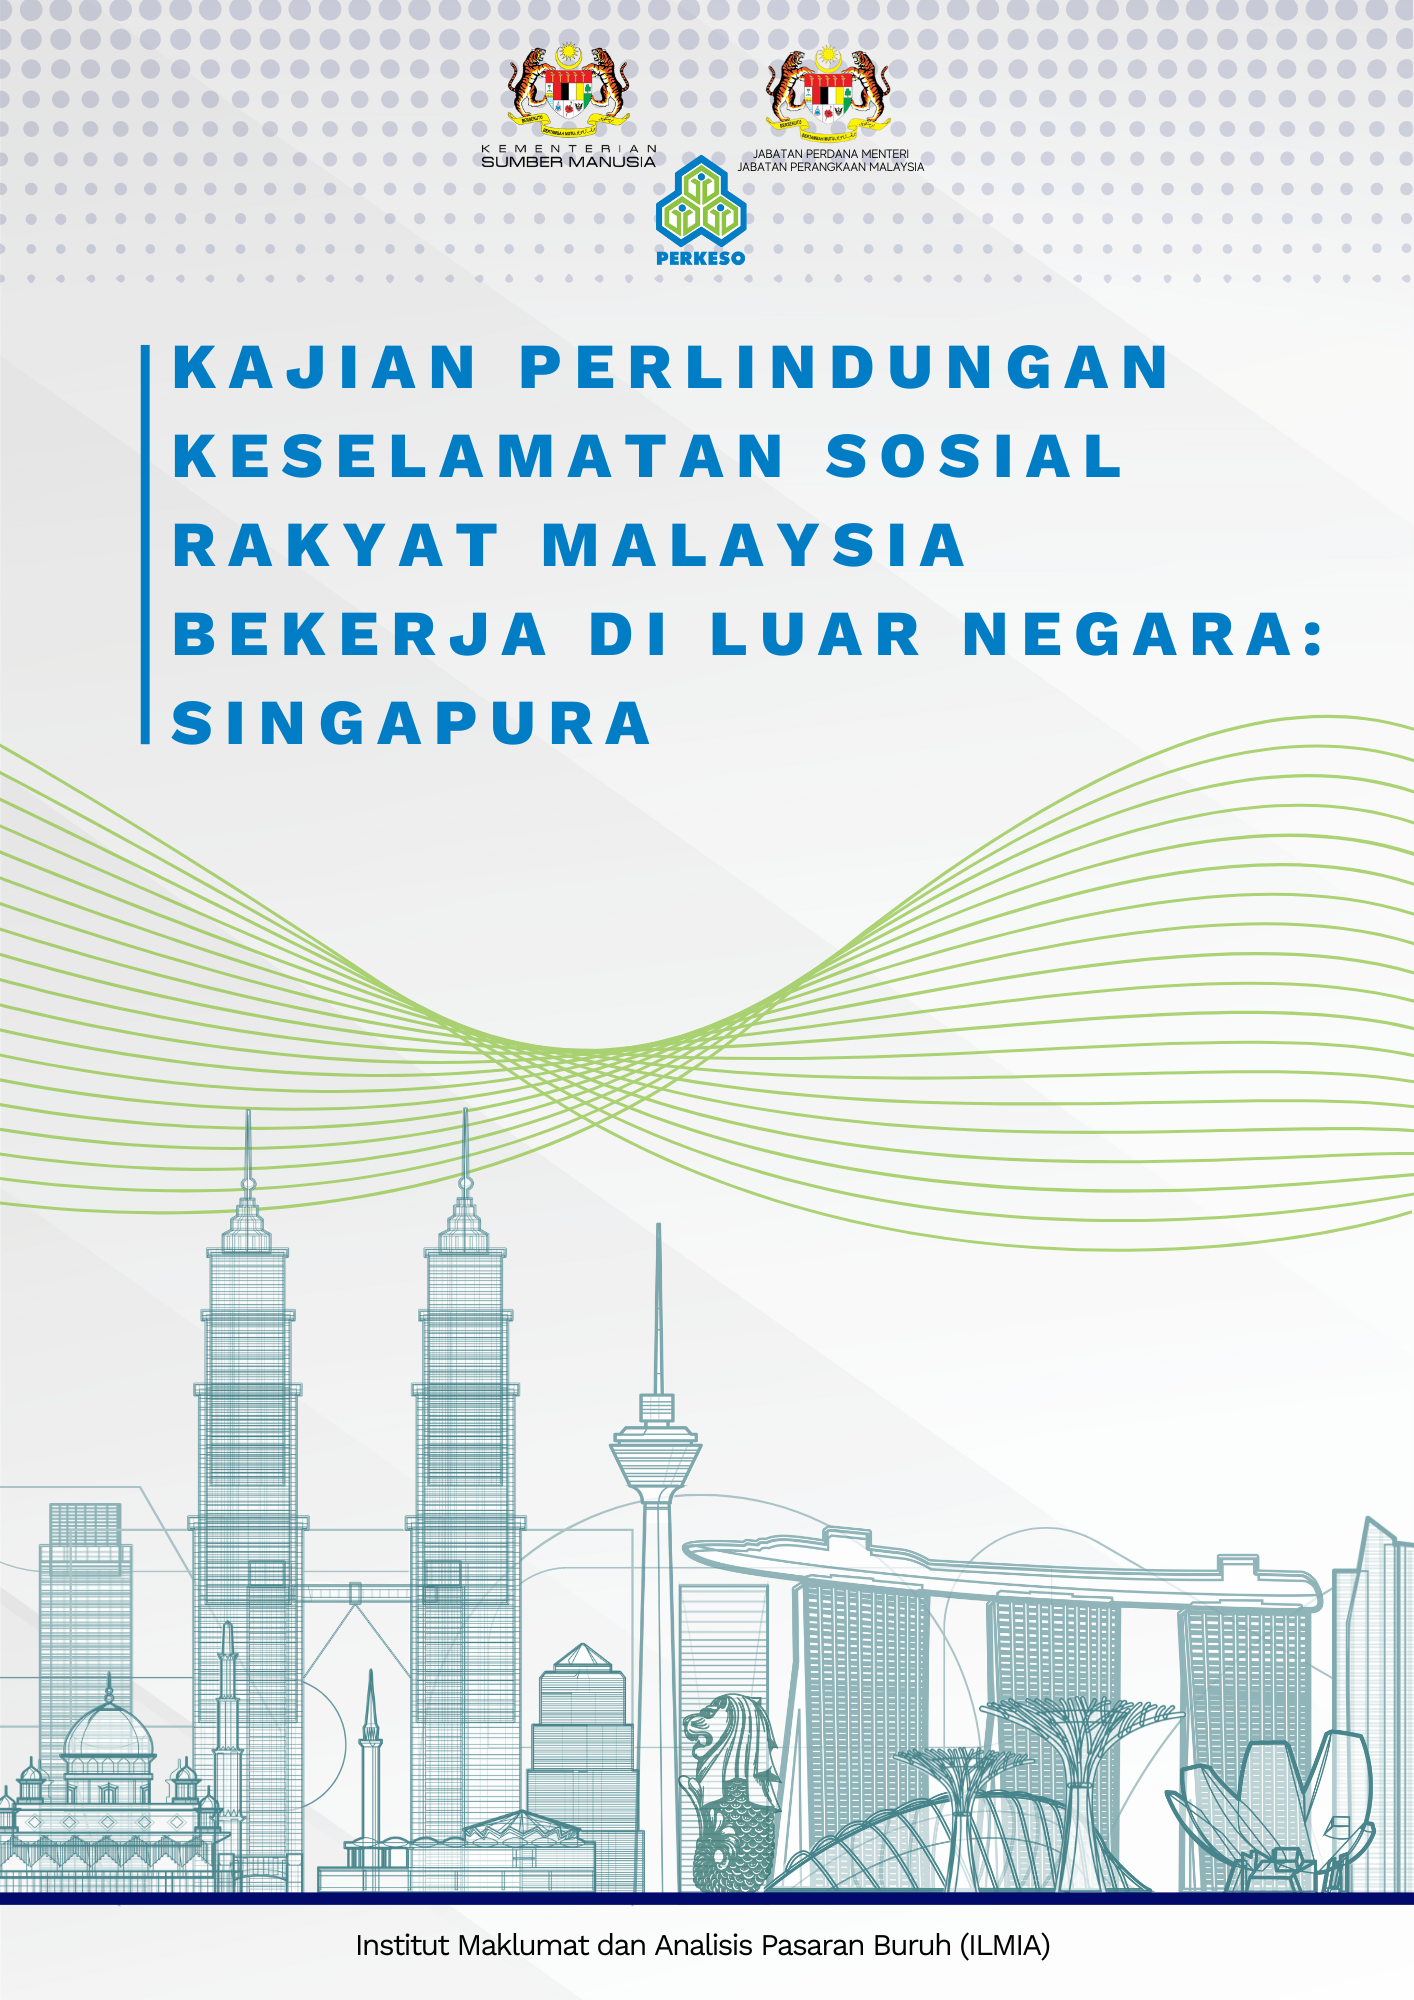 Kajian Perlindungan Keselamatan Sosial Rakyat Malaysia Bekerja di Luar Negara: Singapura